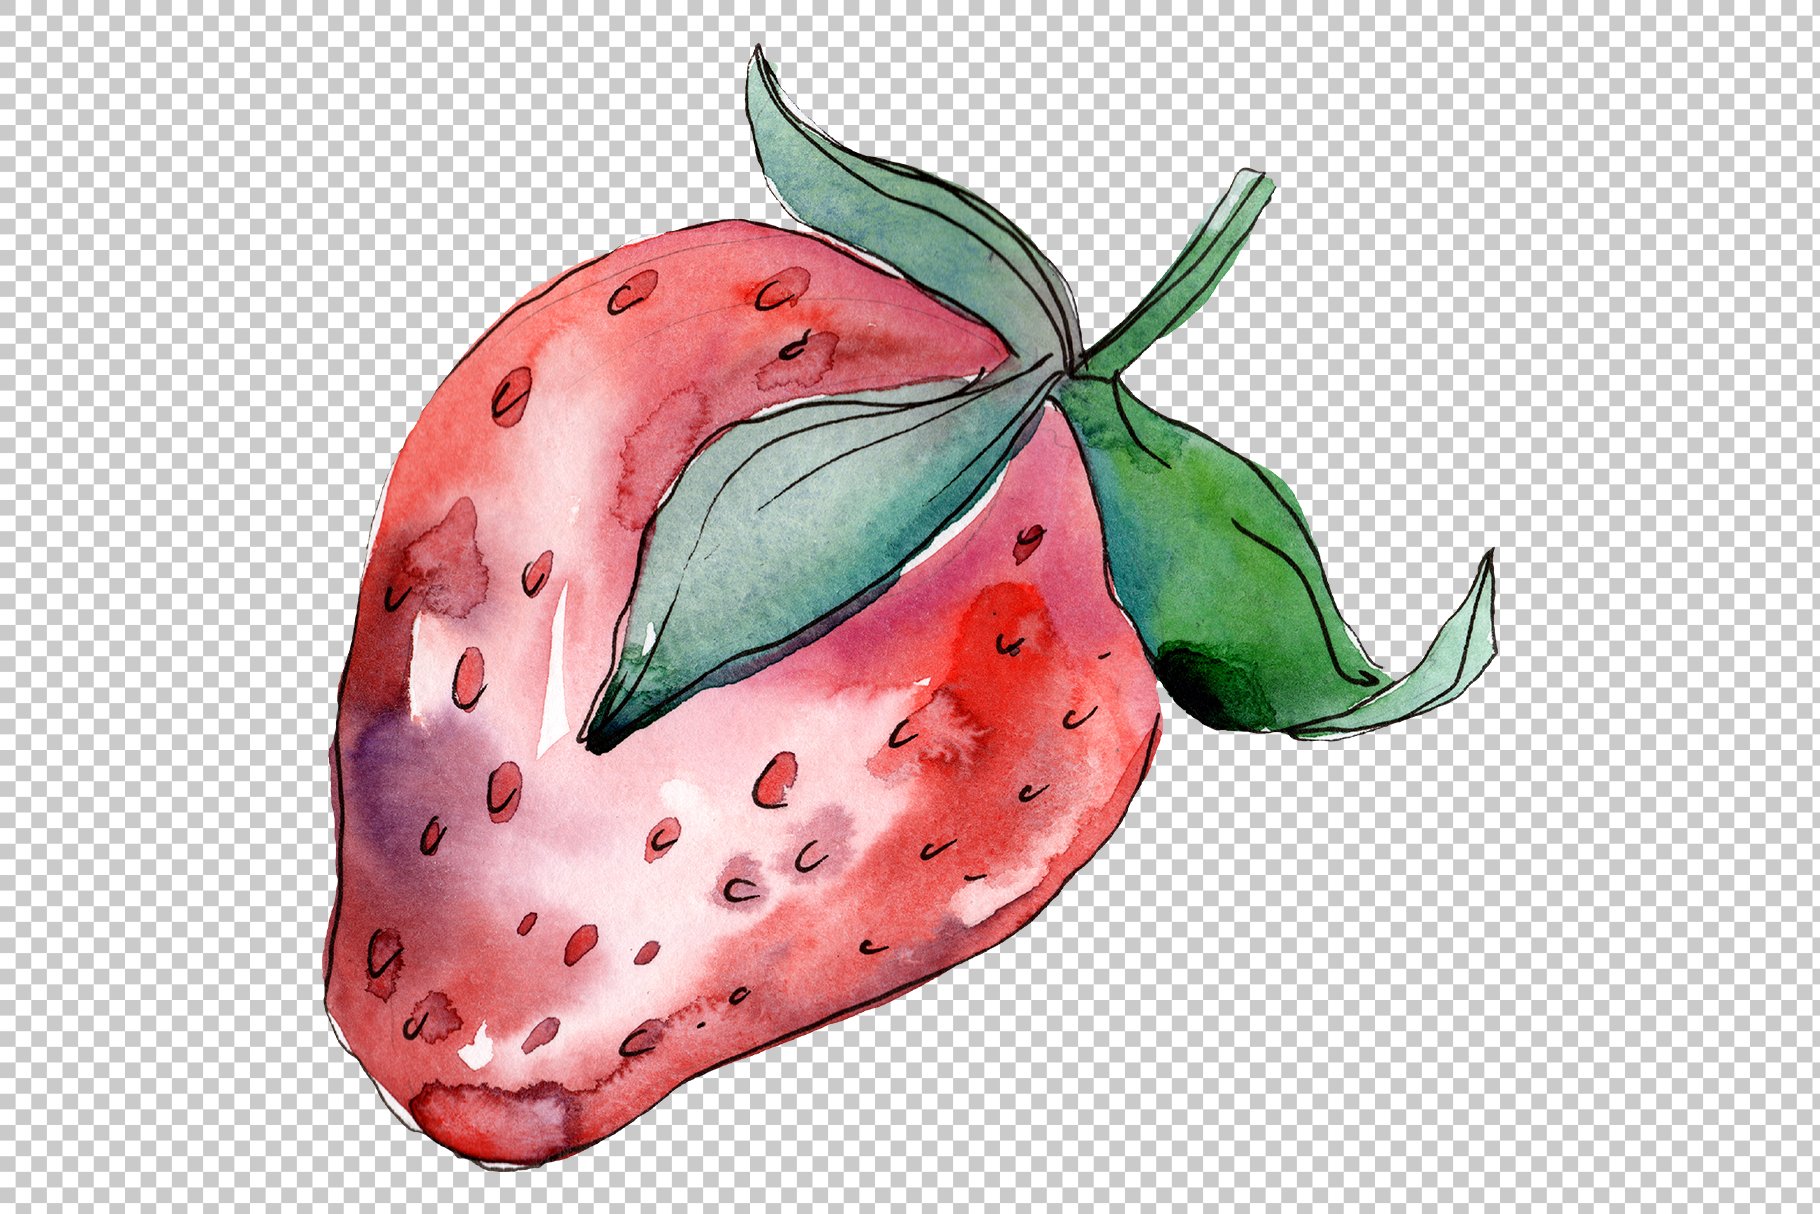 Single watercolor strawberry.